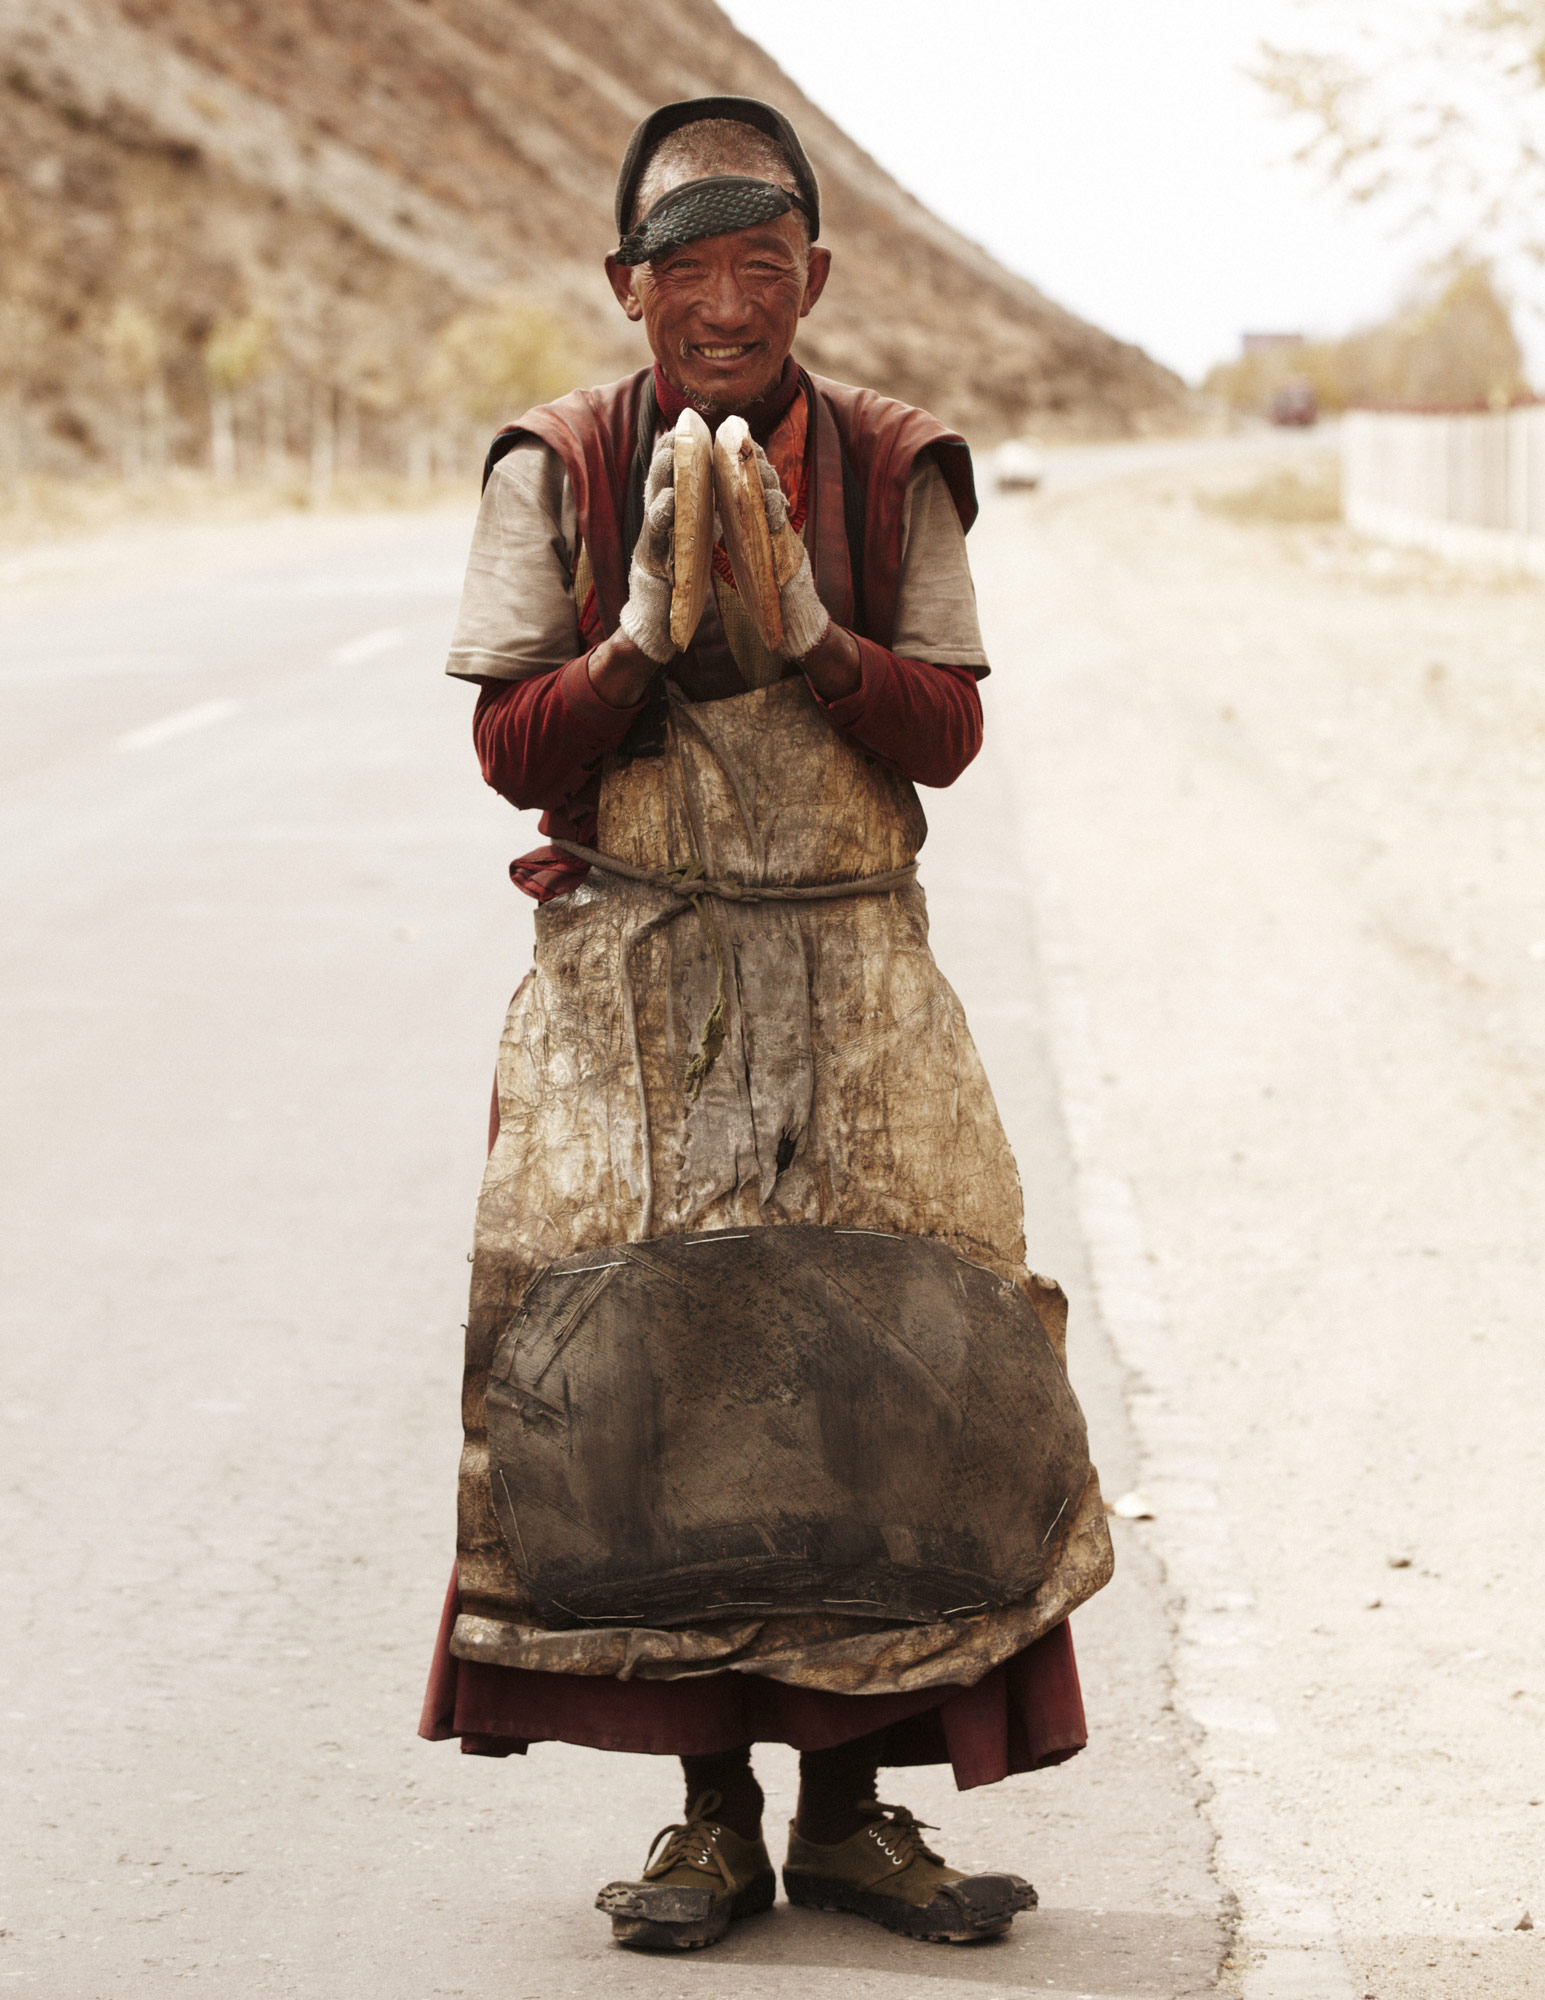 Tibet, 2011: Tebitan man smiling